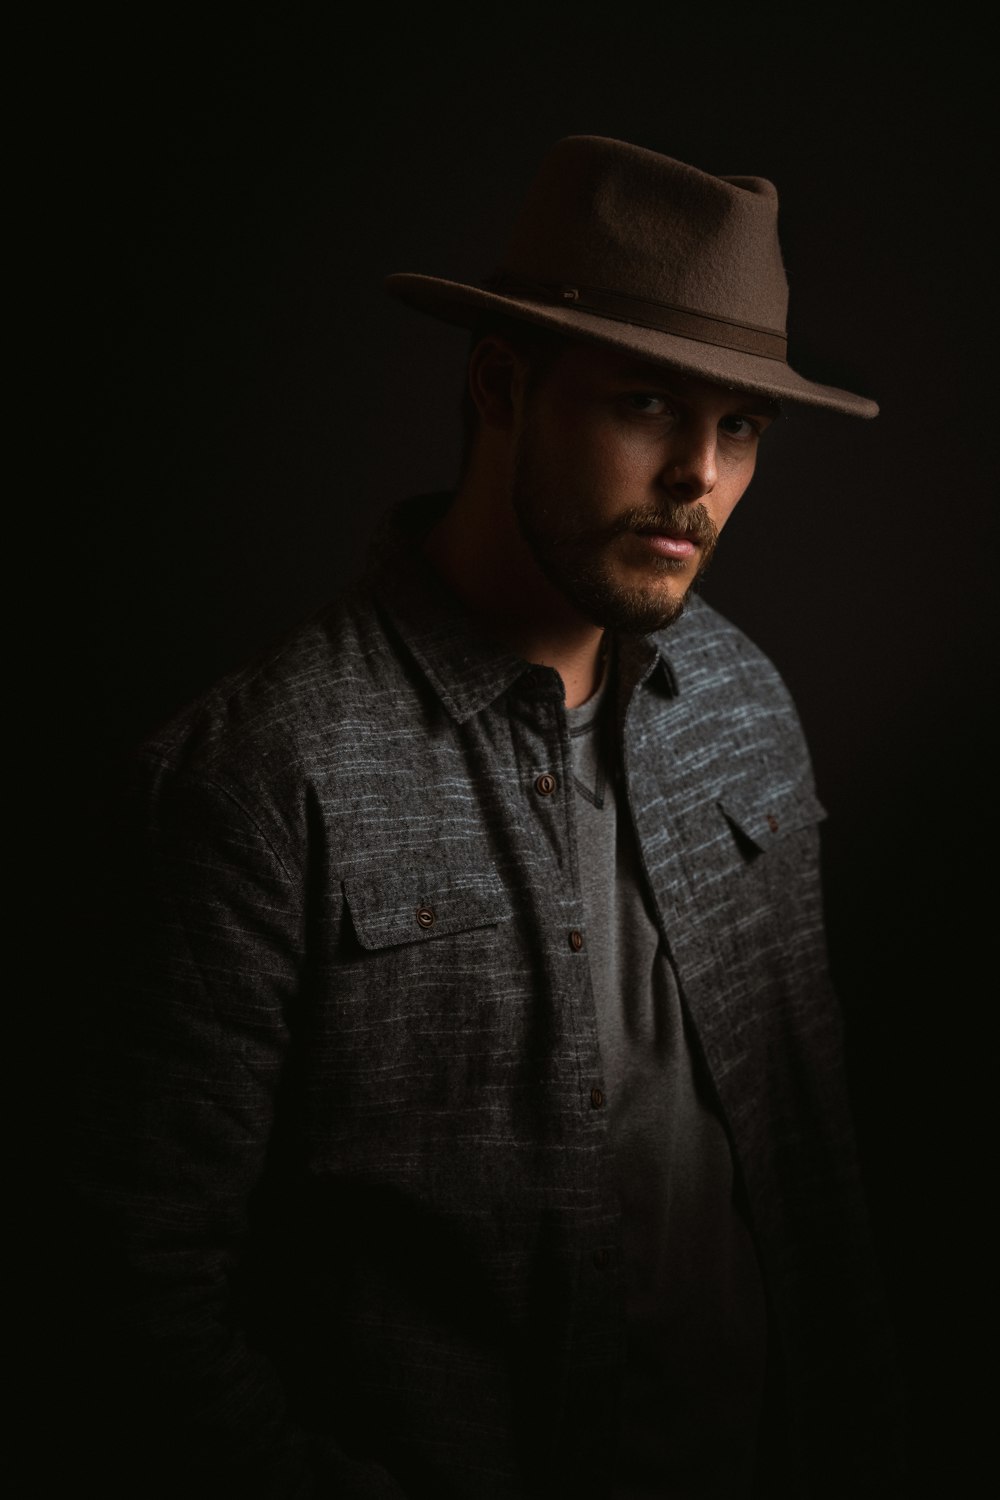 man in gray dress shirt wearing brown fedora hat